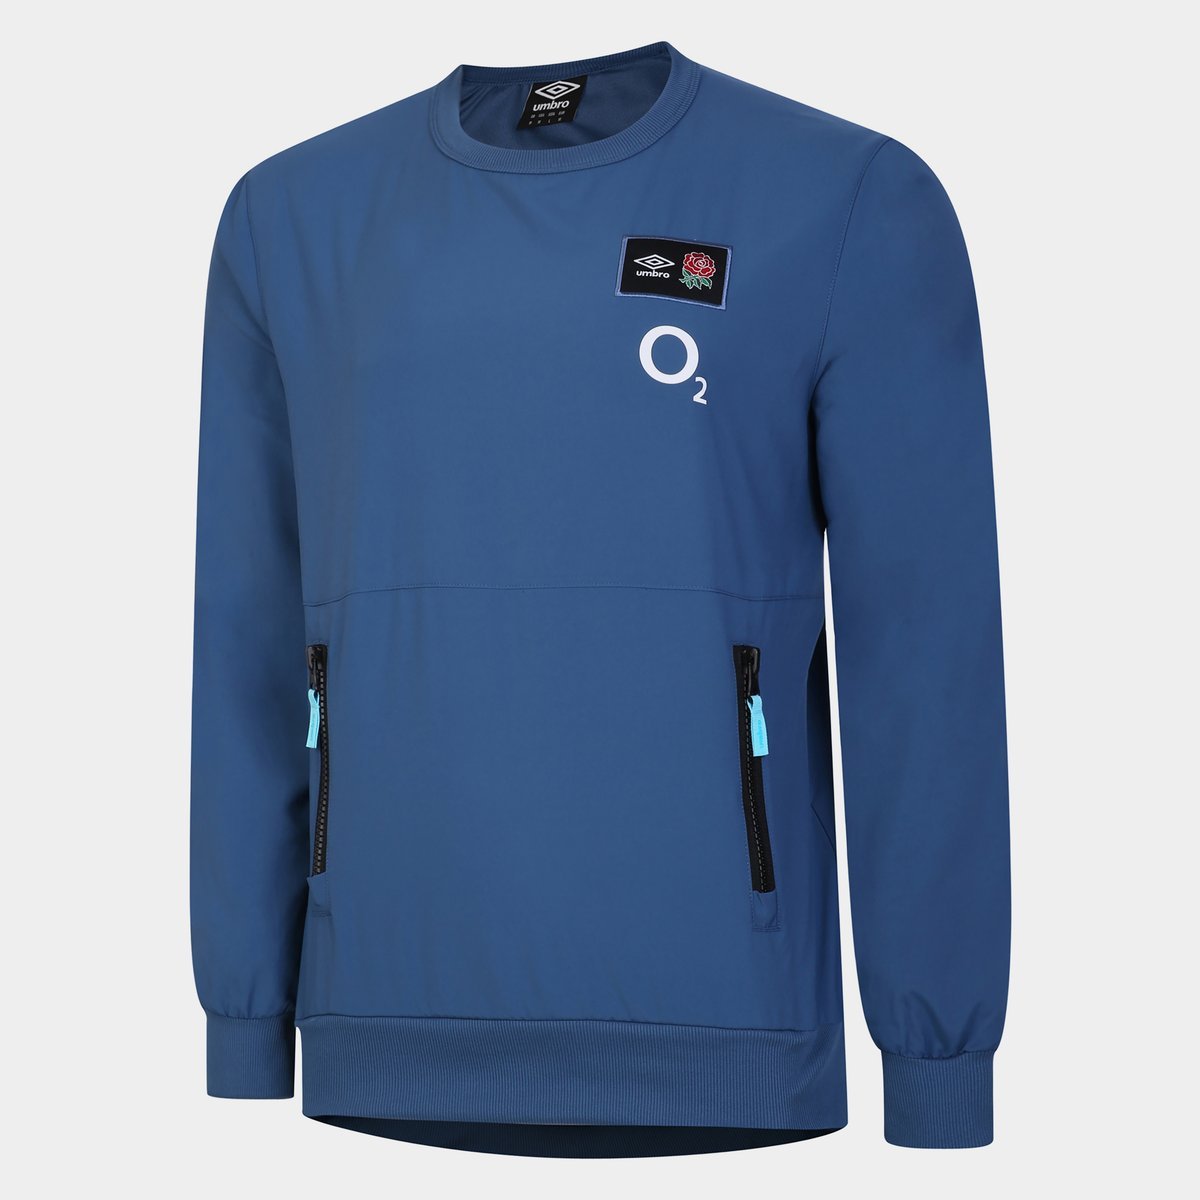 Umbro England Sweatshirt Adults Ensign Blue, £42.00